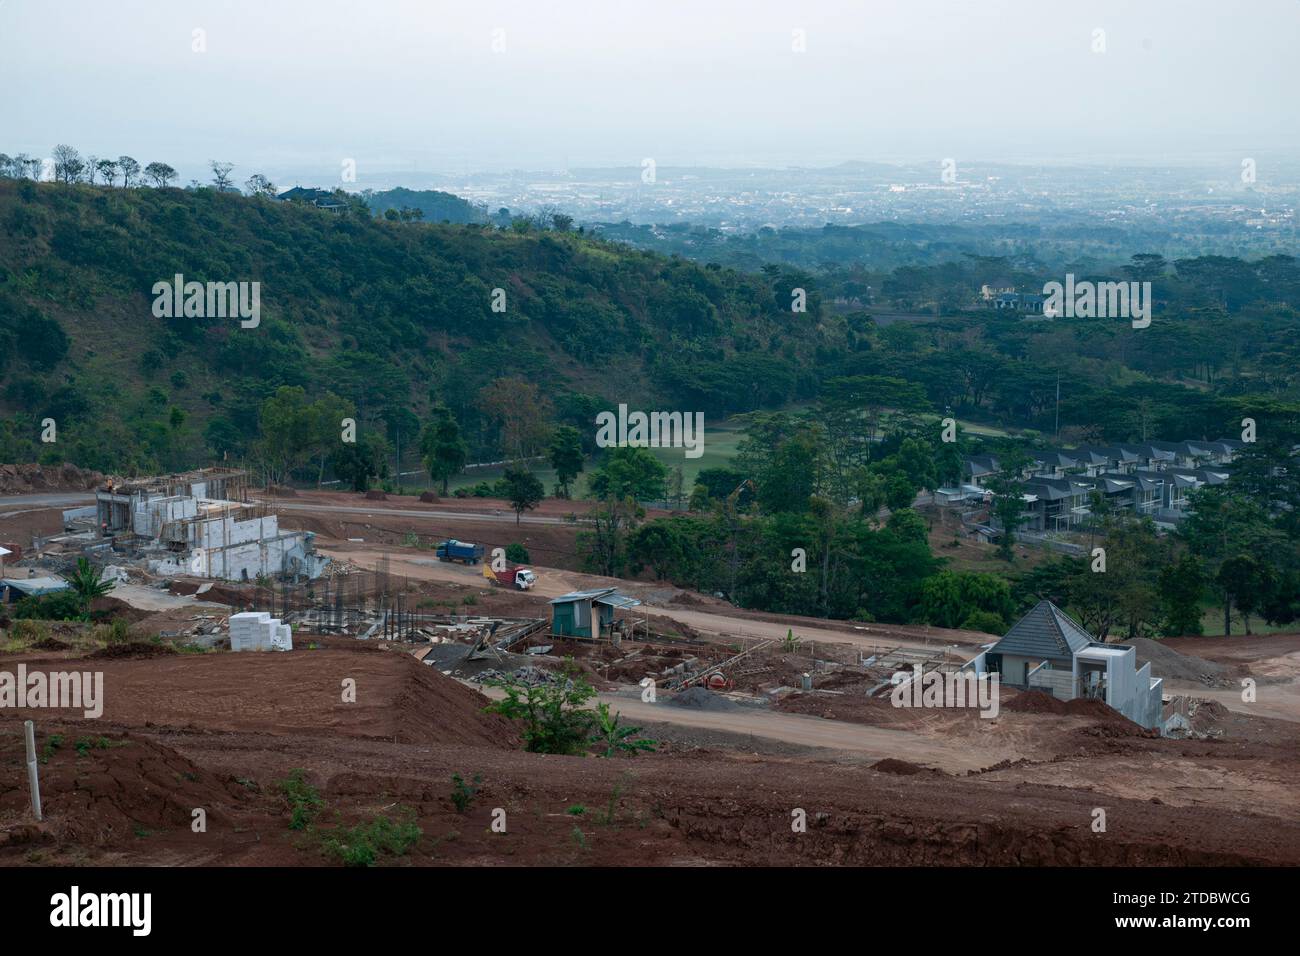 chantiers de construction sur les pentes de montagne, préparation de terrains pour les zones résidentielles Banque D'Images